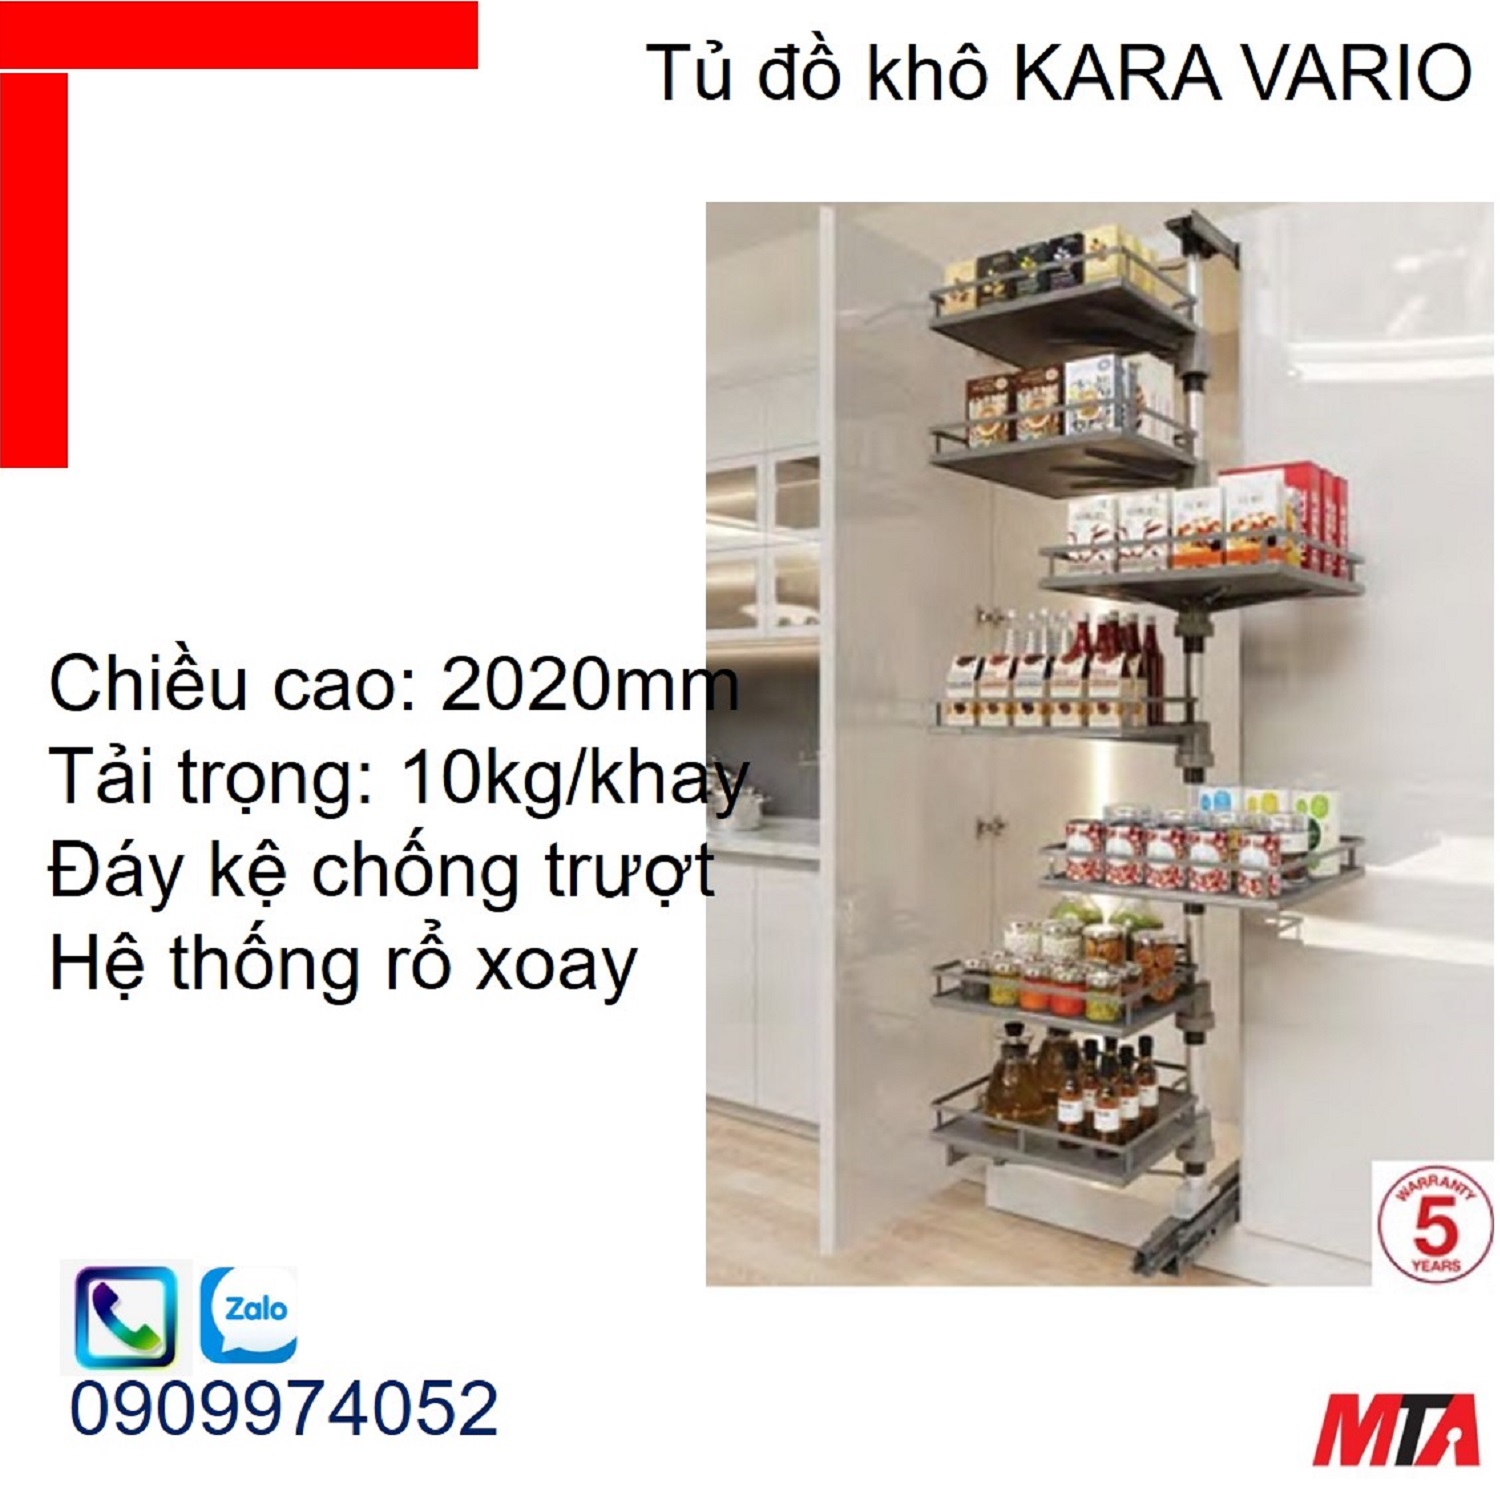 Phụ kiện tủ bếp KOSMO KARA VARIO 595.82.805 tủ cao 2020mm